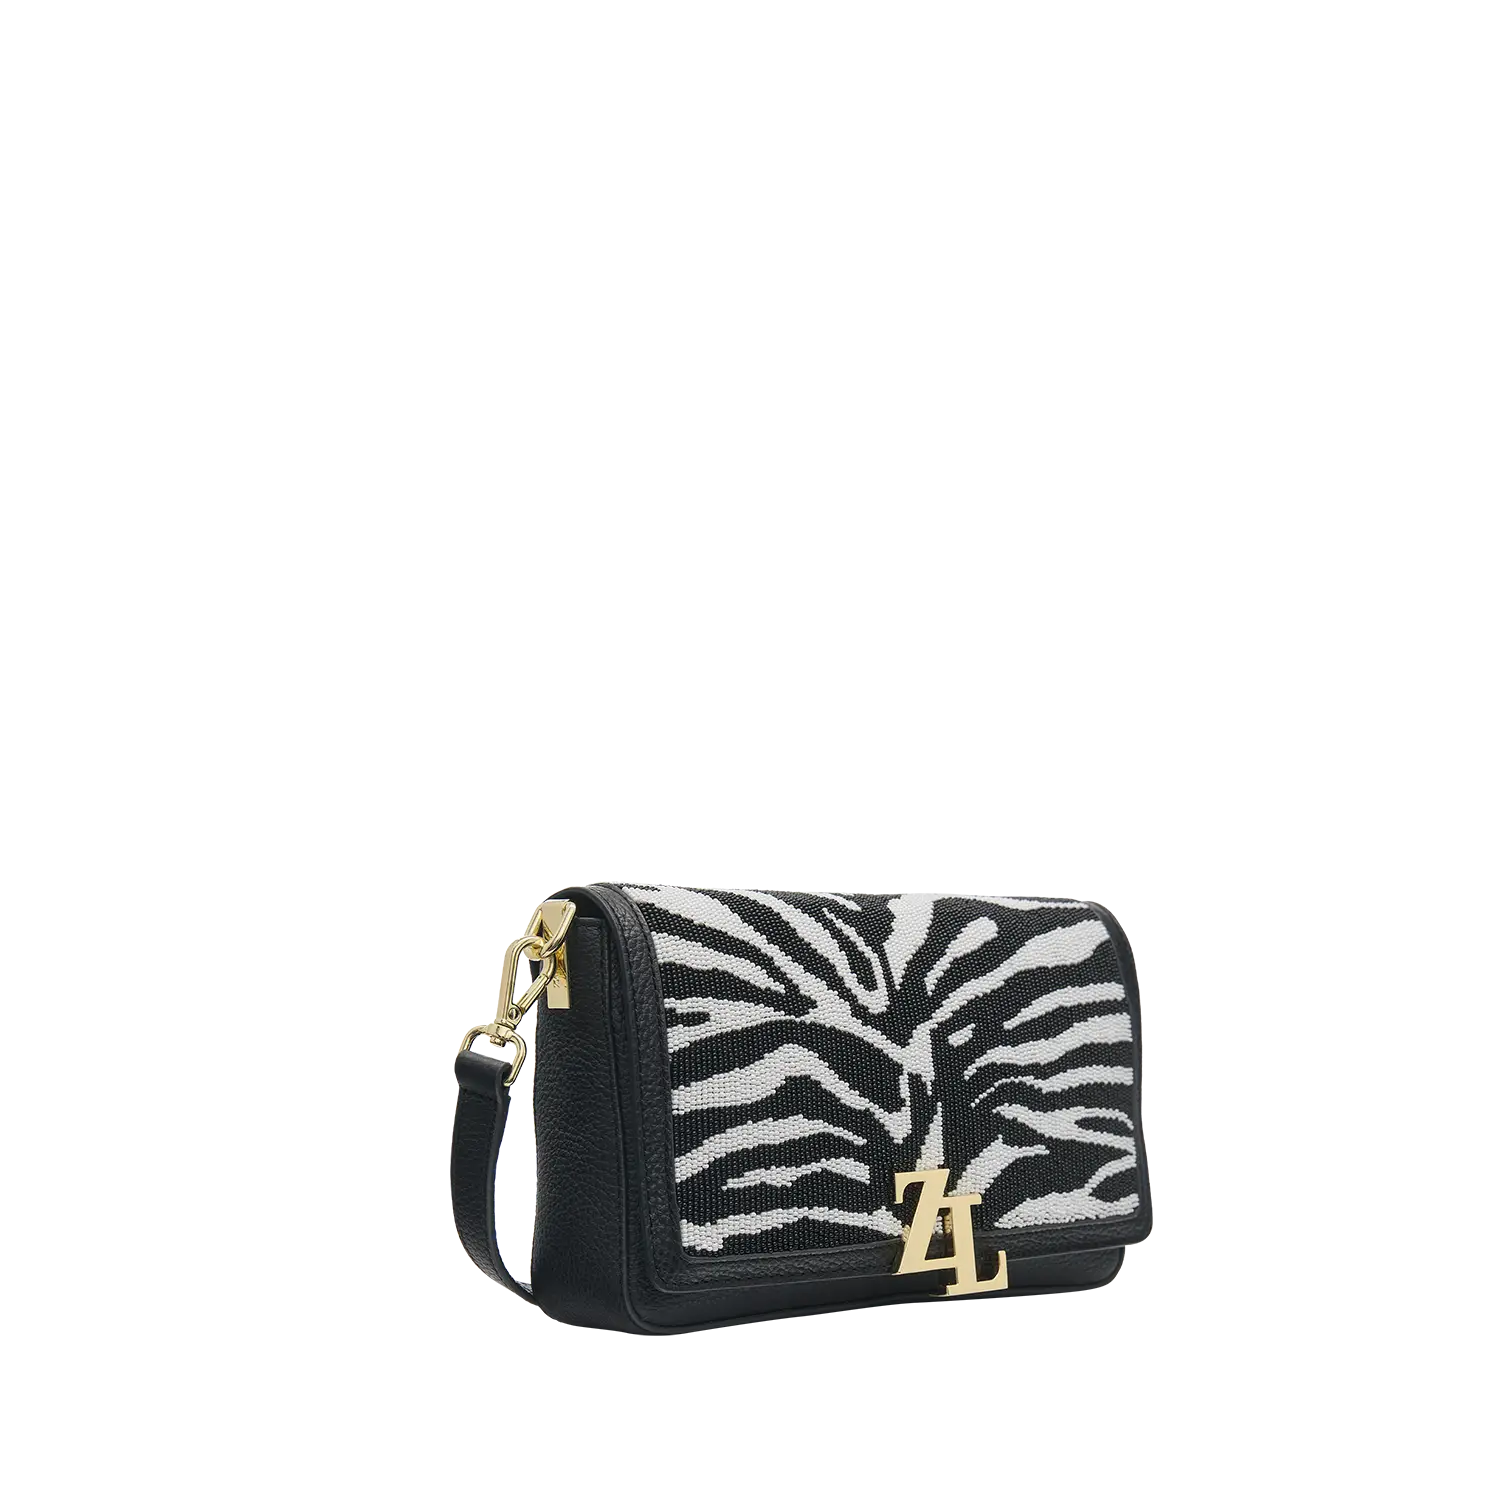 Wechselklappe - Zebra Crush - schwarz-weiss